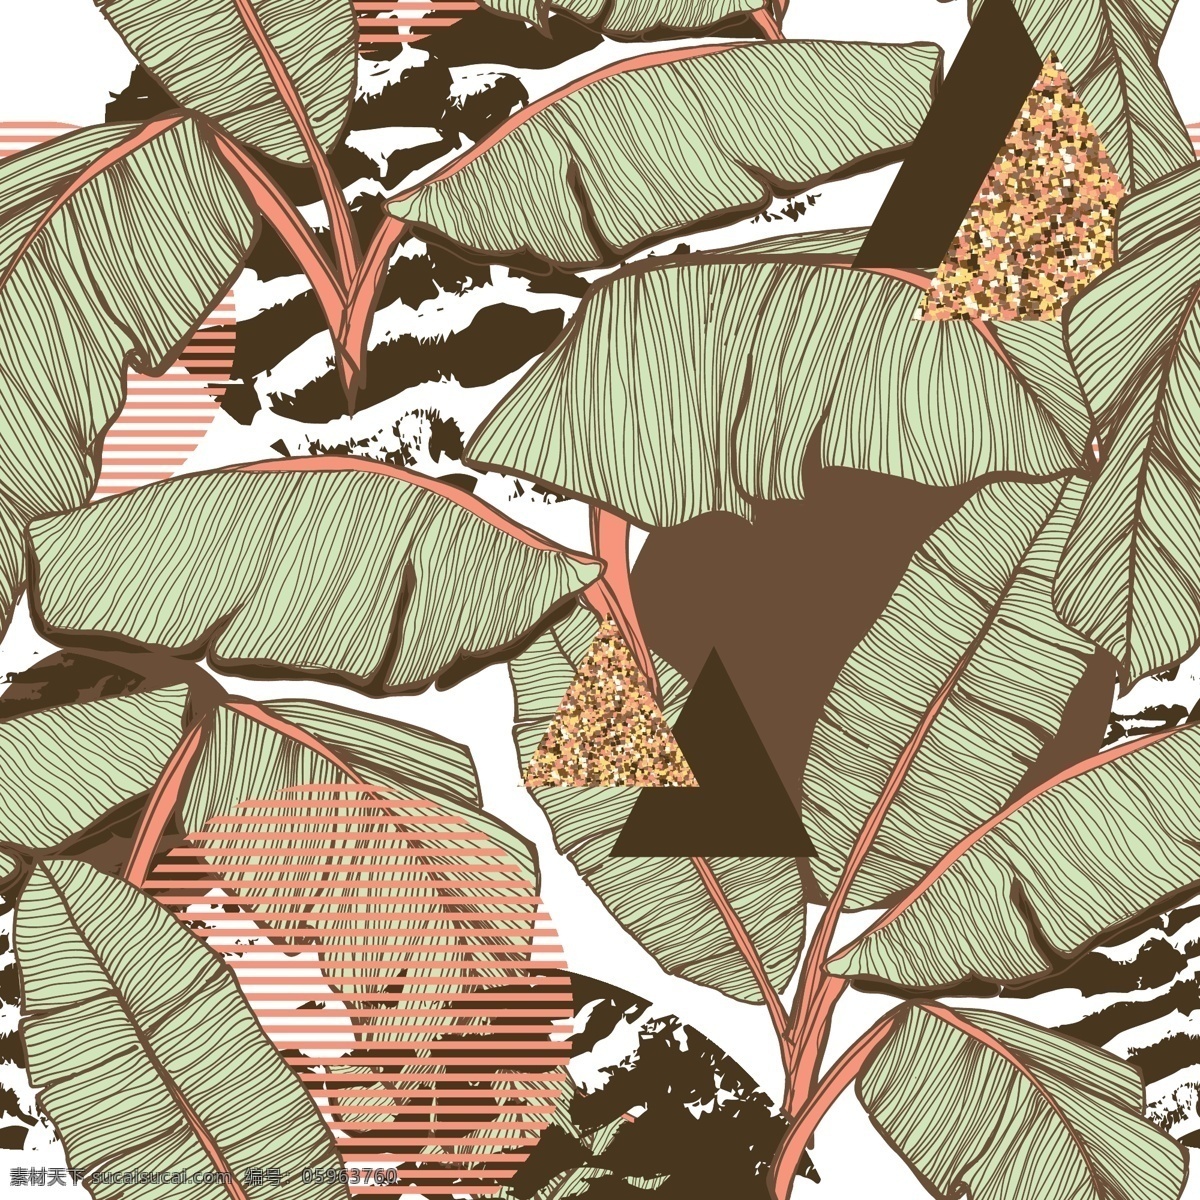 花草素材图片 花草 花朵 树叶 颜色 纹理 背景 矢量 设计图库 环境设计 室内设计